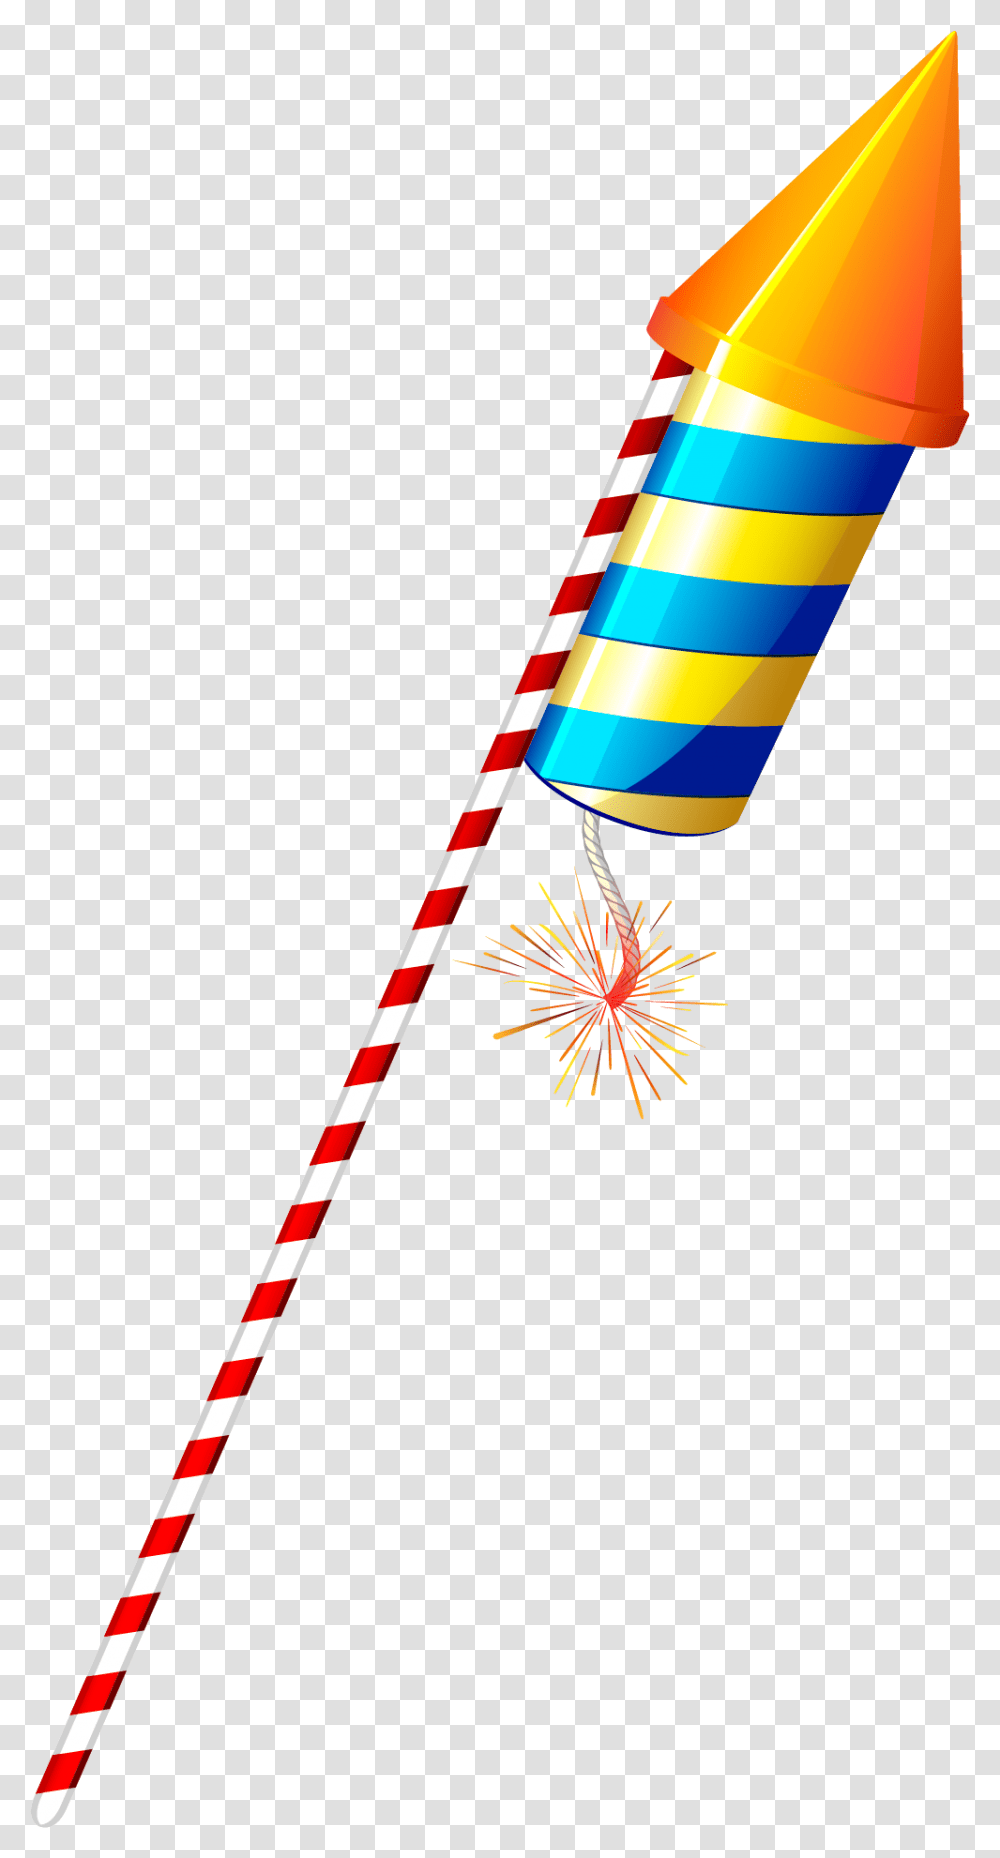 Download Colorful Diwali Fireworks Firecracker Sparkler Diwali Rocket, Stick, Light, Cane, Wand Transparent Png